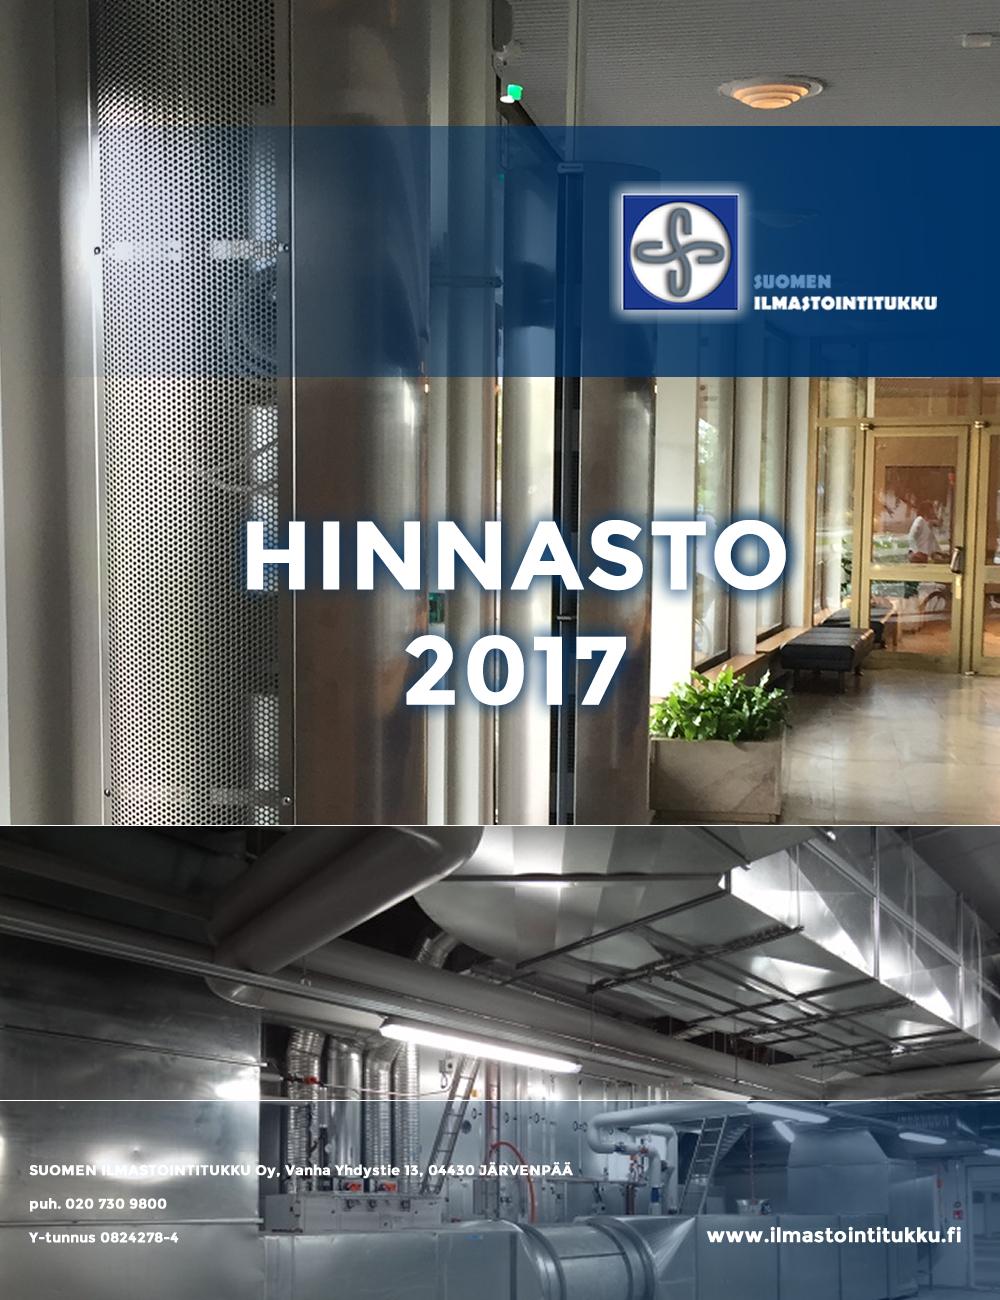 HINNASTO 2017 SUOMEN ILMASTOINTITUKKU Oy, Vanha Yhdystie 13, 04430